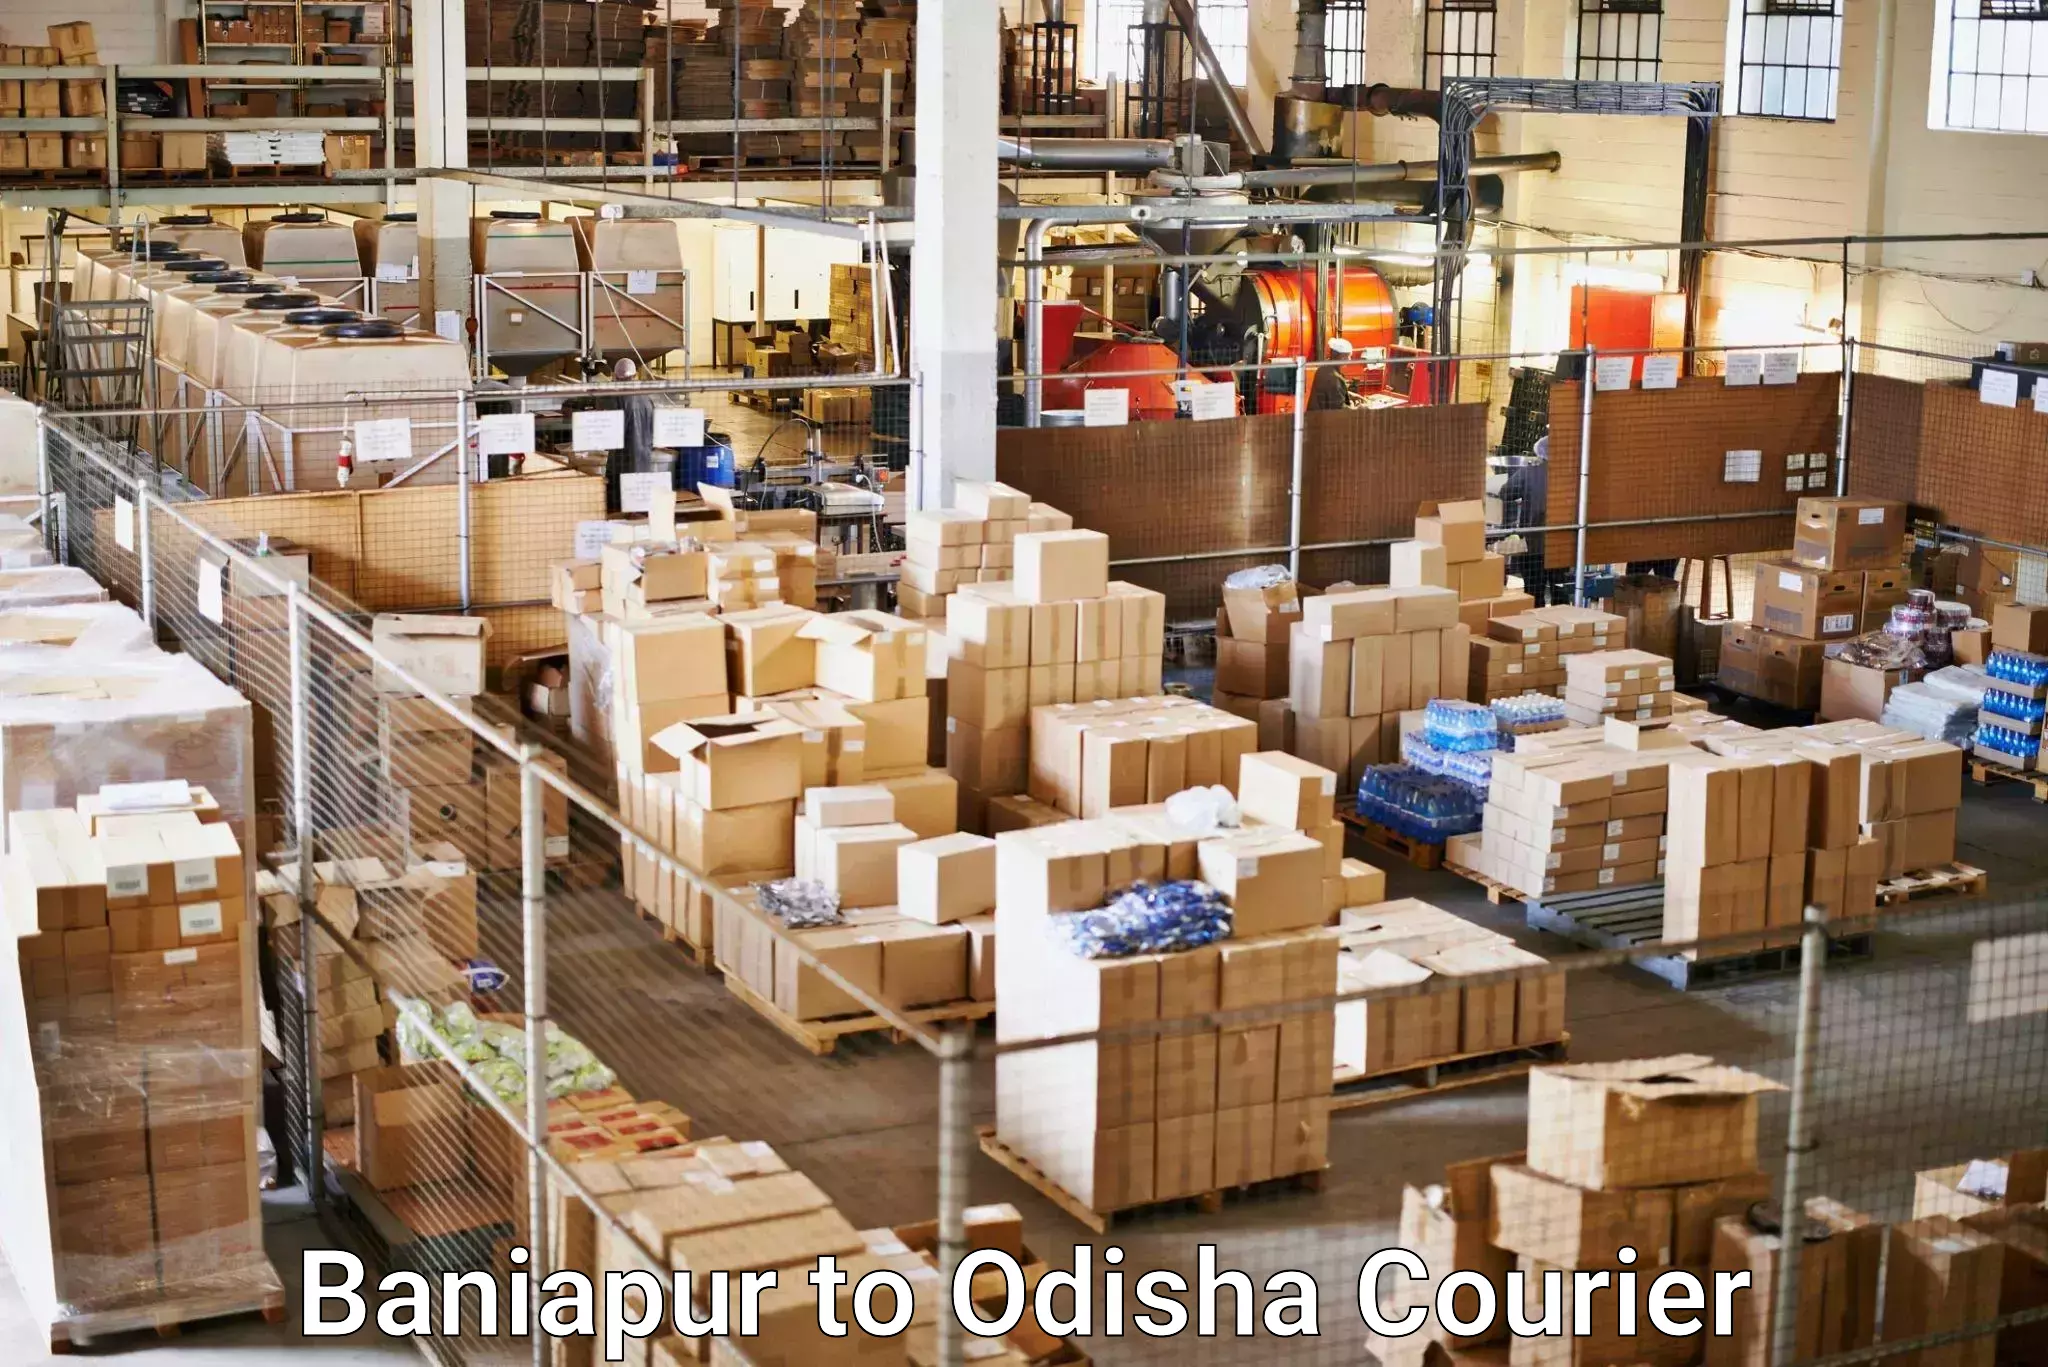 Global shipping networks Baniapur to Baleswar